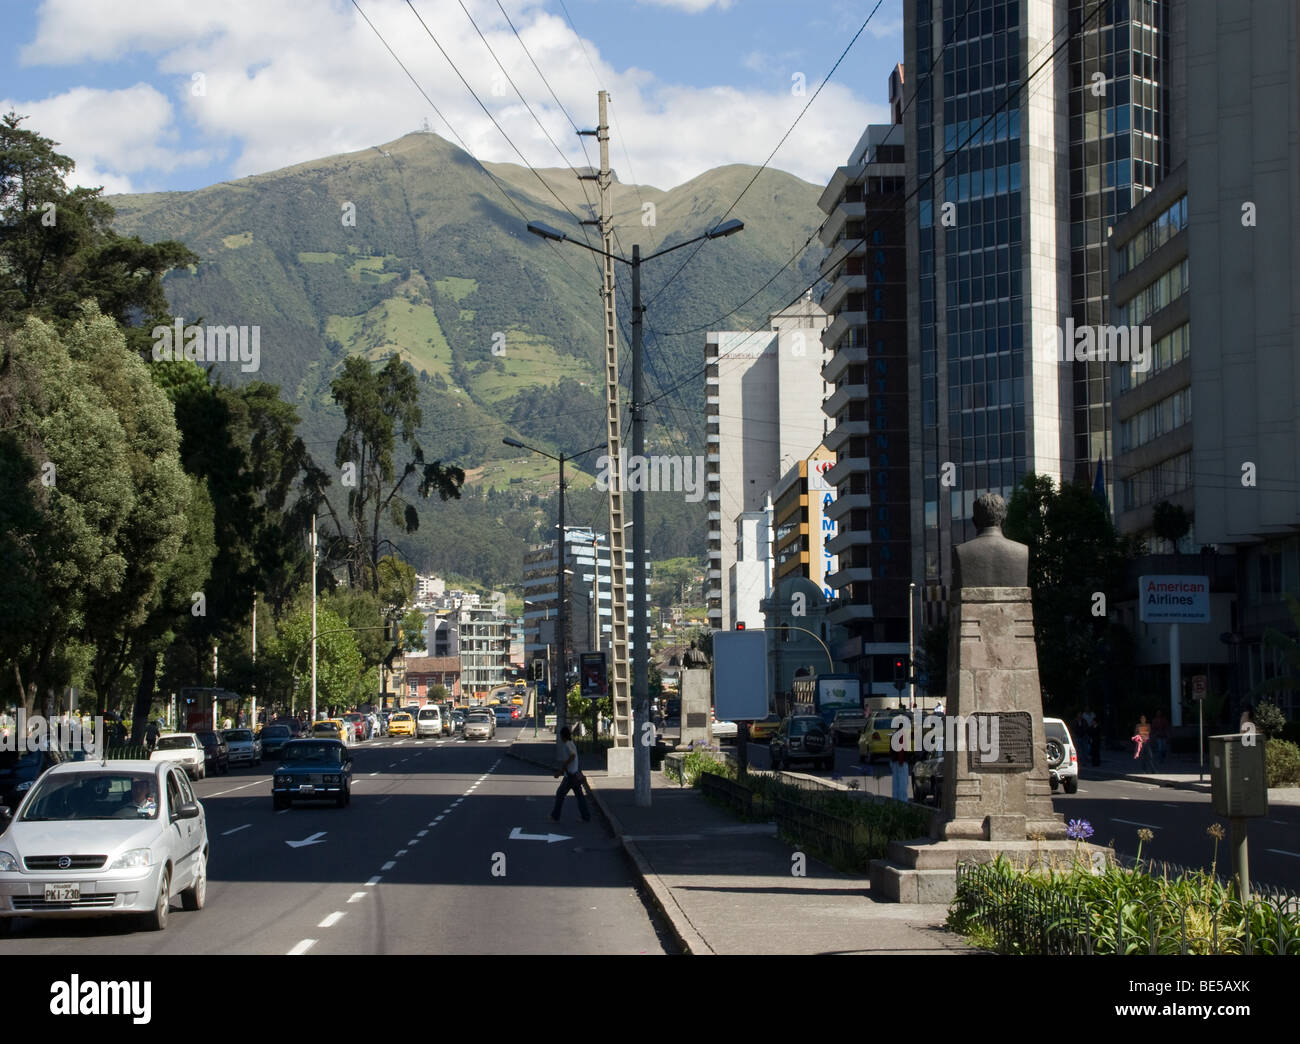 Quito.Ecuador.City center.10 de Agosto avenue. Stock Photo